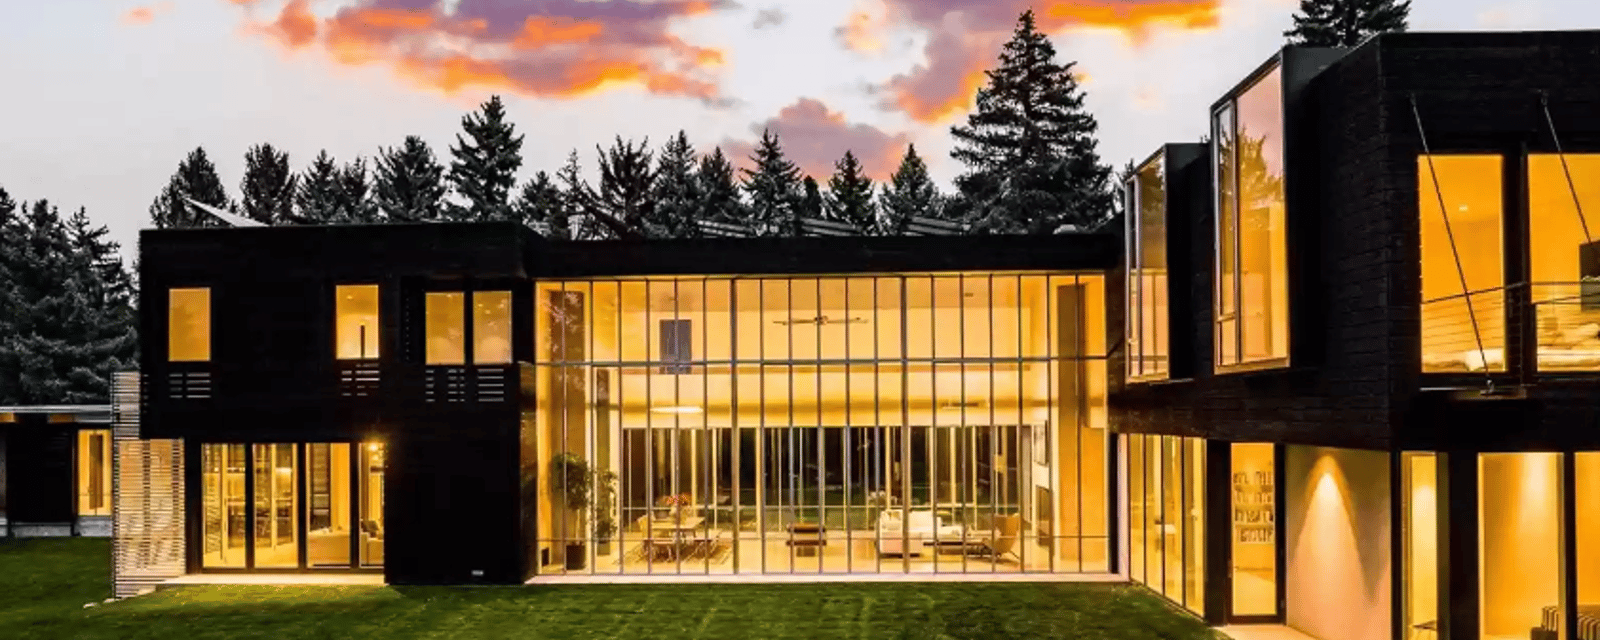 Cette maison de verre est un véritable château moderne